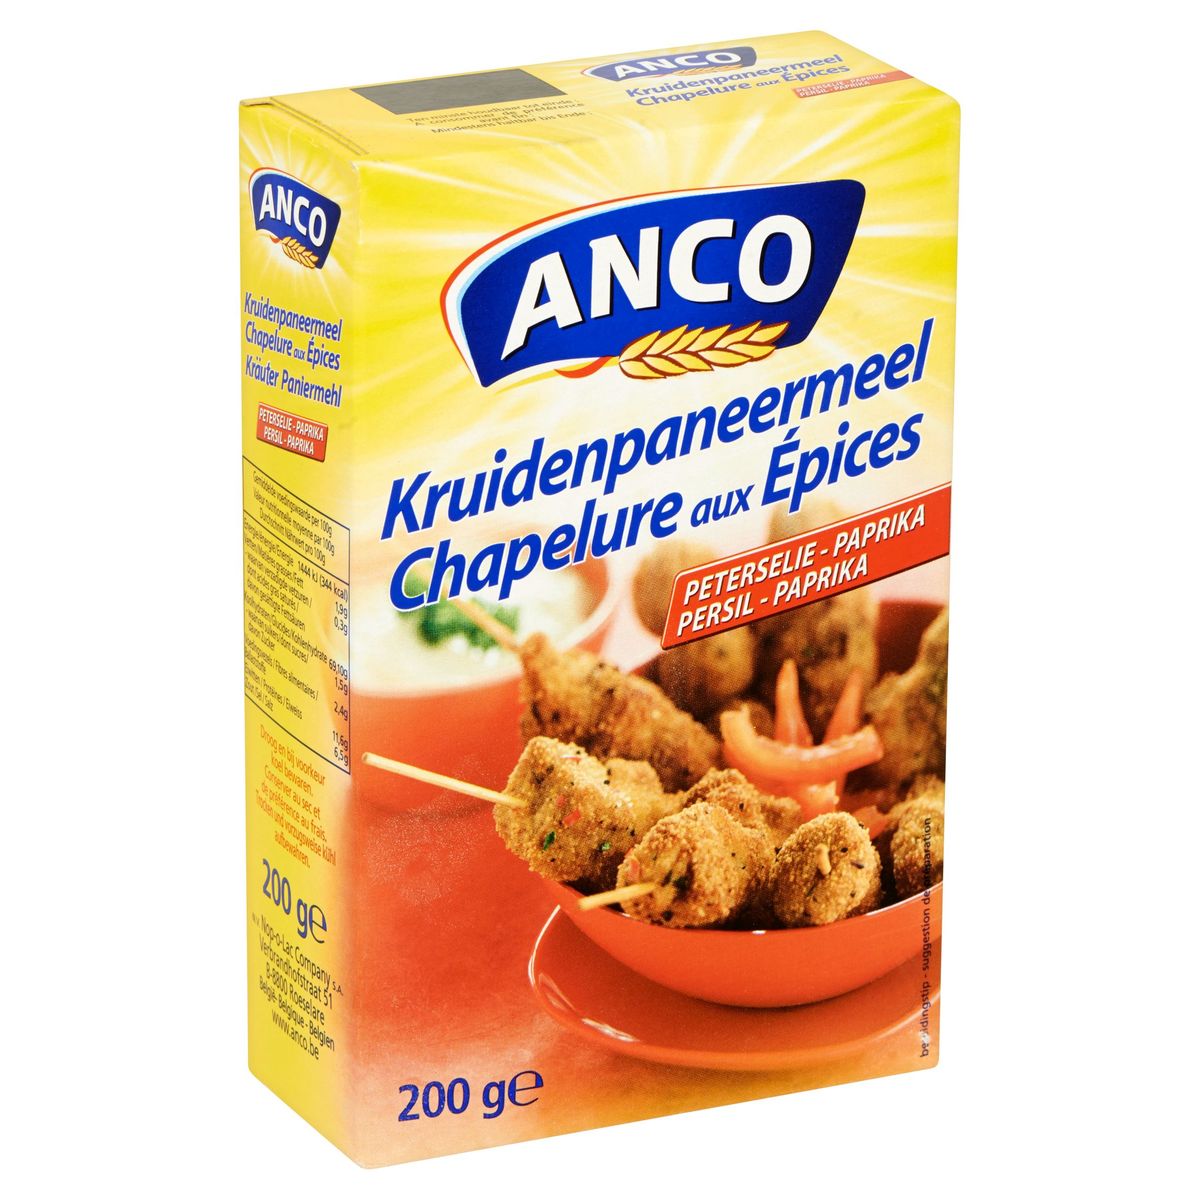 Anco Kruidenpaneermeel Peterselie - Paprika 200 g